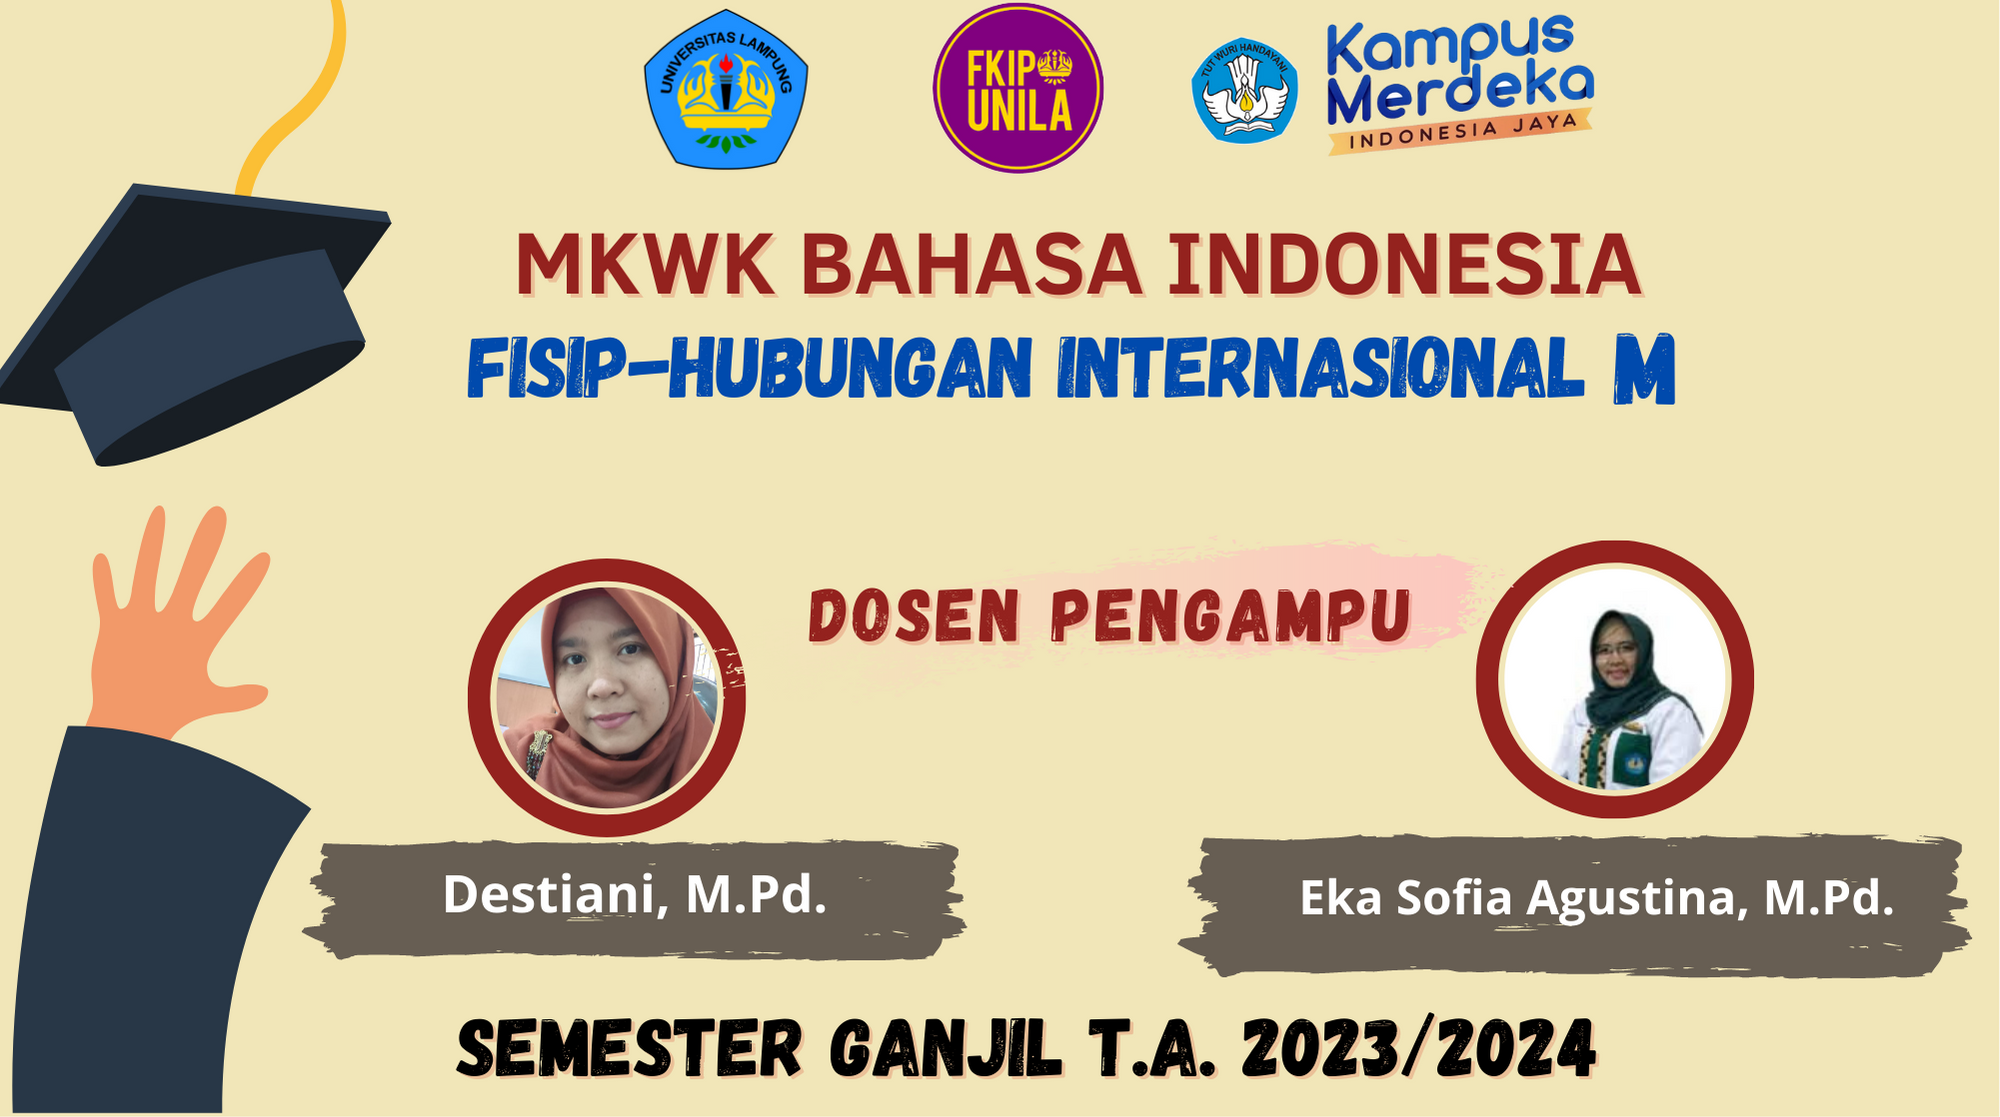 MKWK BAHASA INDONESIA-FISIP HI M-SEMESTER GANJIL-TA. 2023/2024